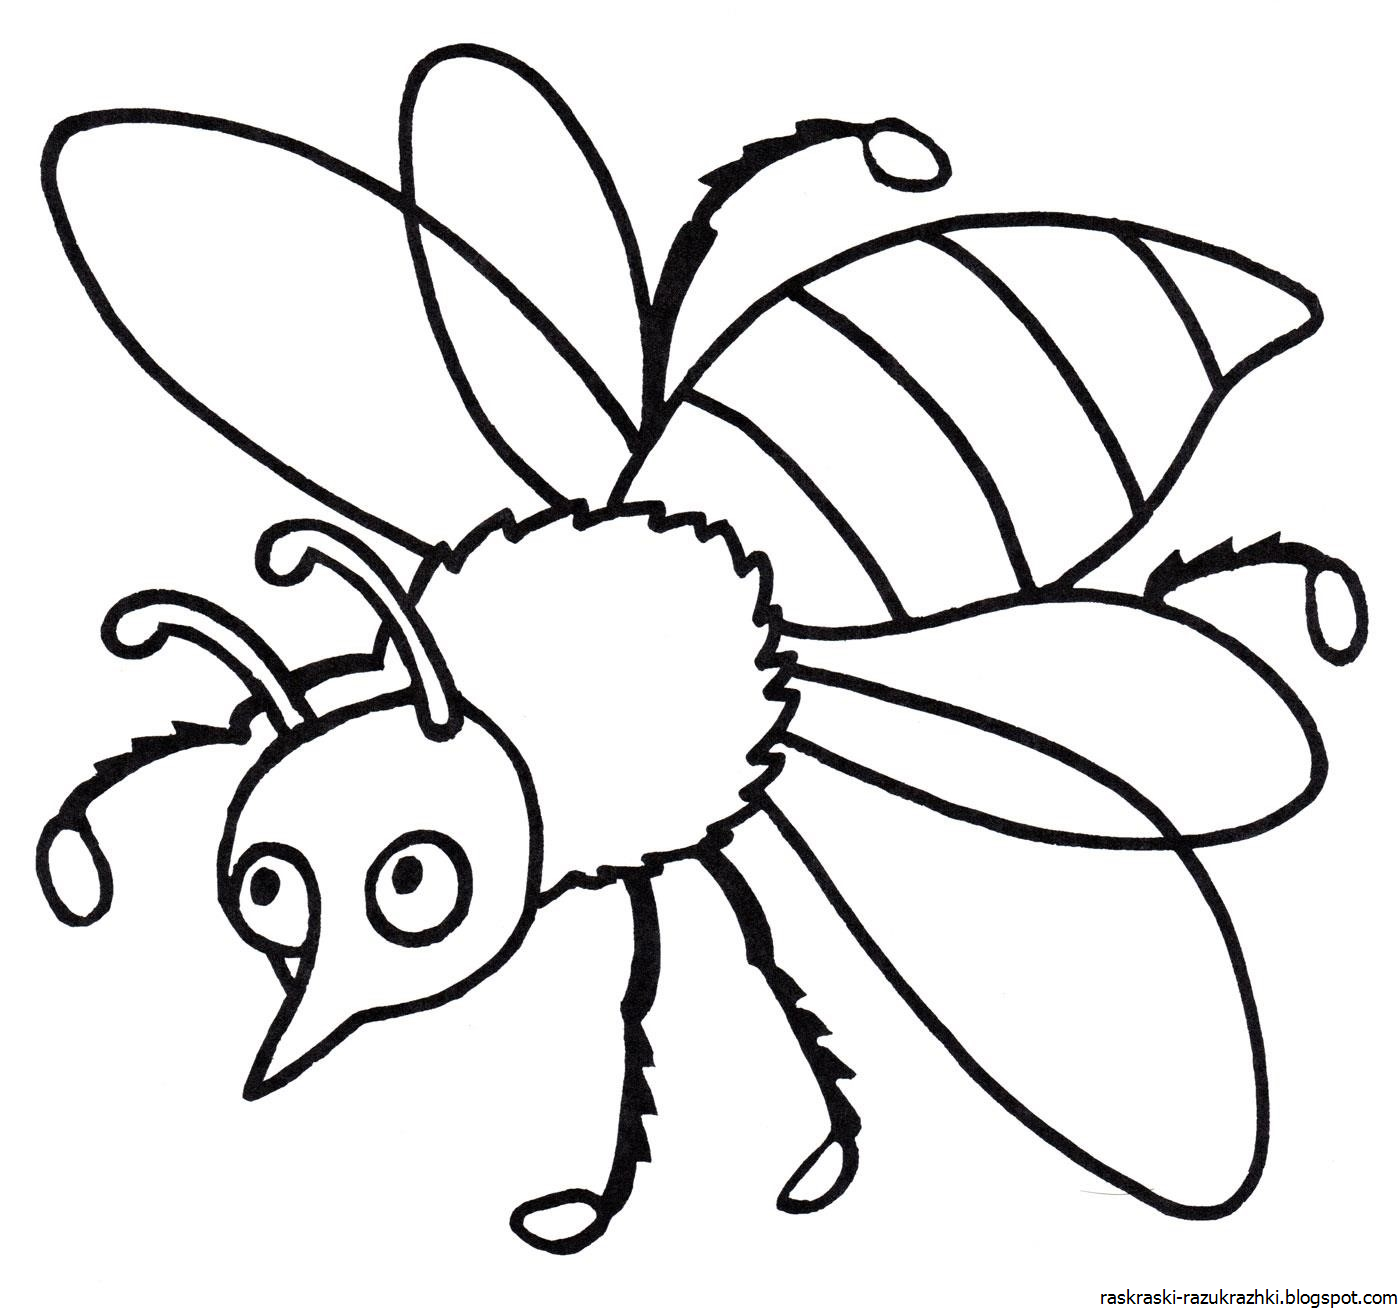 Насекомые раскраска для детей. Раскраски насекомые для детей 5-6 лет. Пчела раскраска. Раскраска насекомые для малышей. Насекомые раскраски для детей 4 5 лет